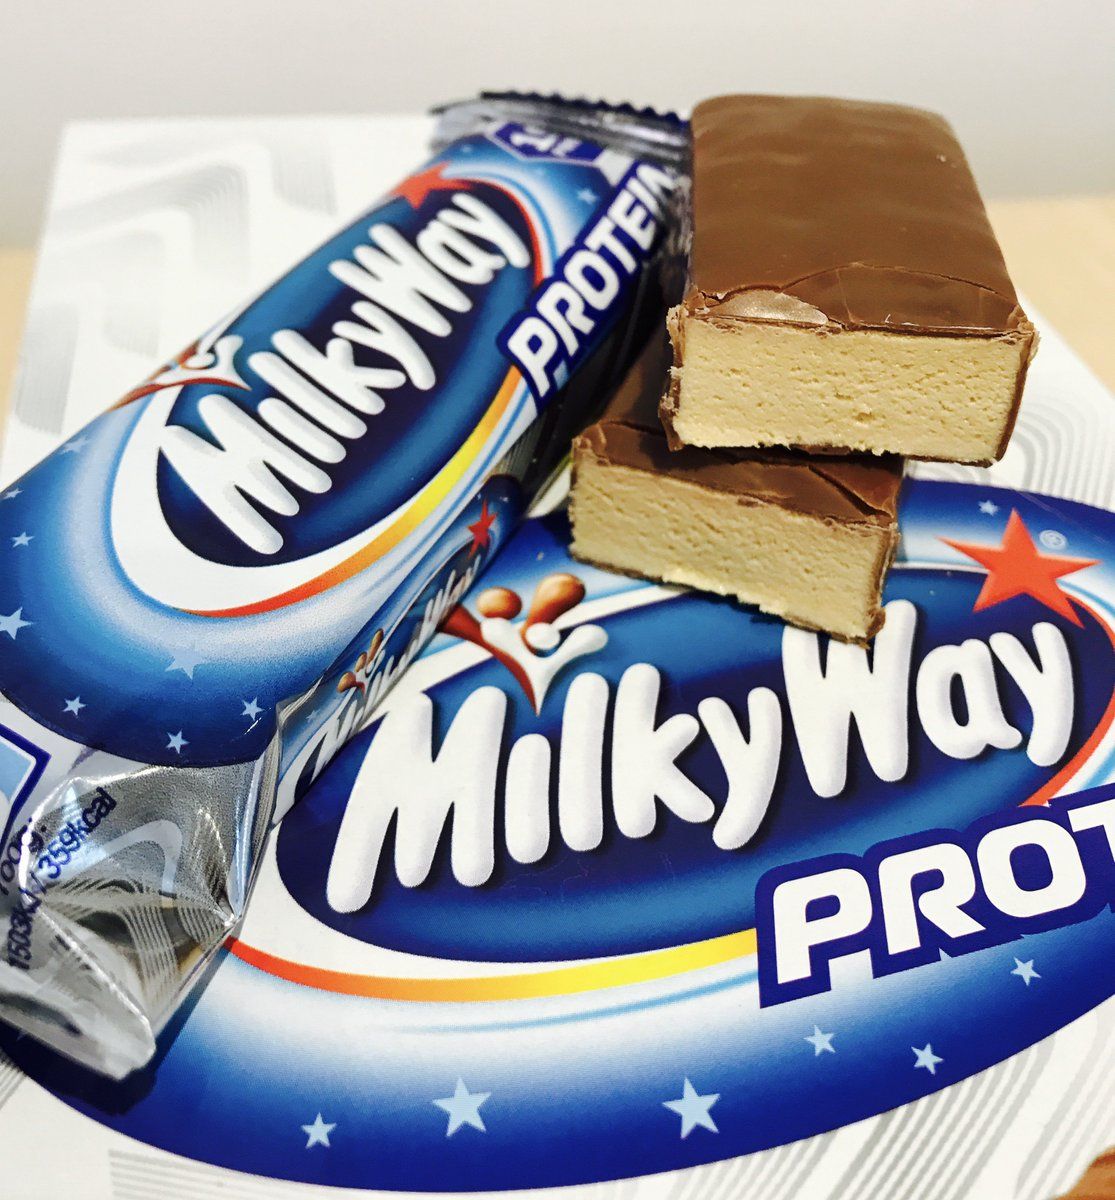 Milky way protein bar